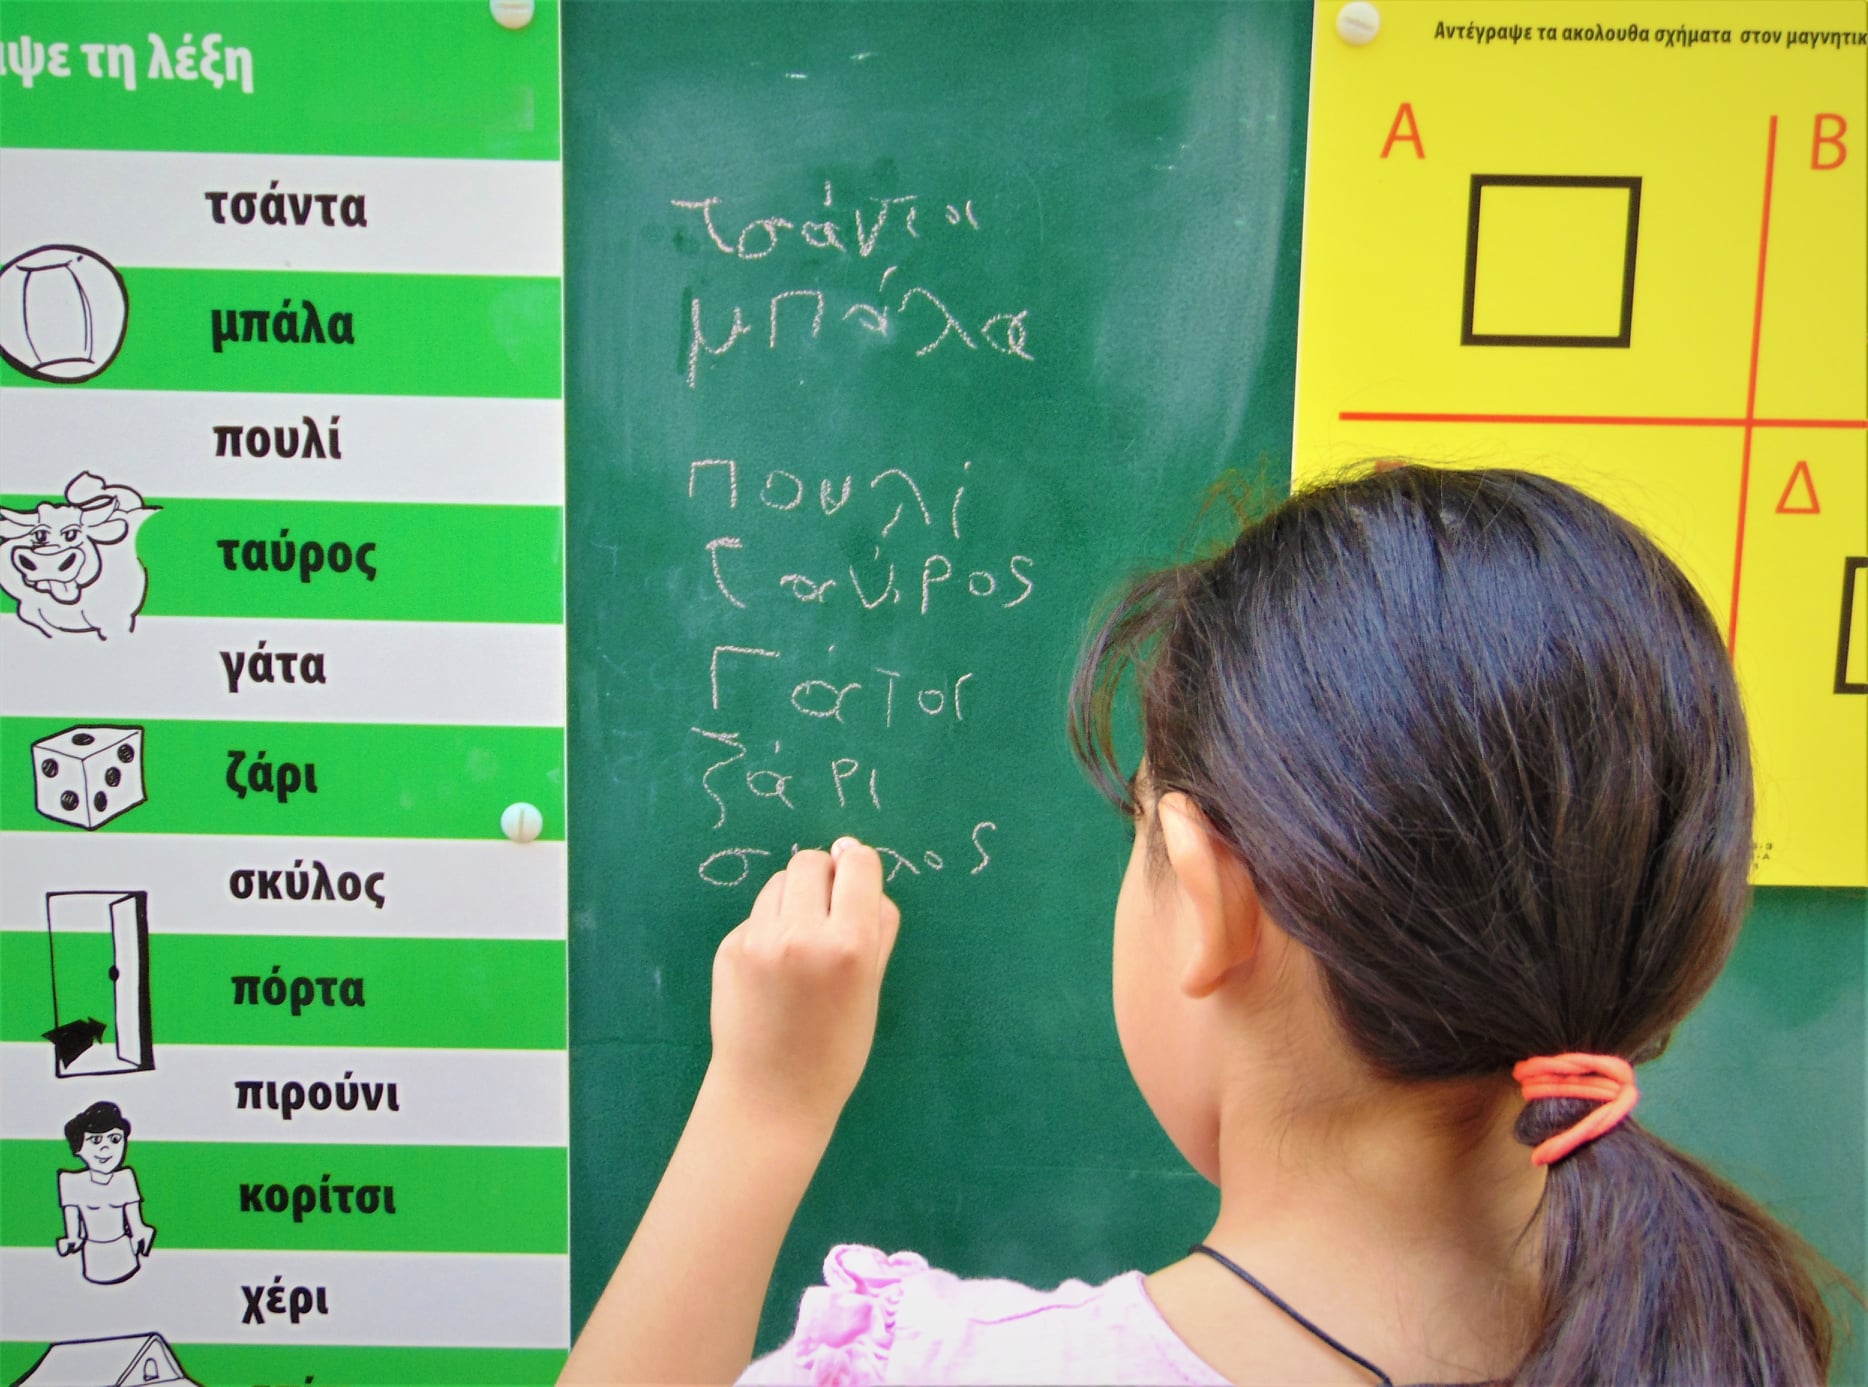 «Το MobileSchool Ταξιδεύει» τίμησε την Παγκόσμια Ημέρα Ελληνικής Γλώσσας